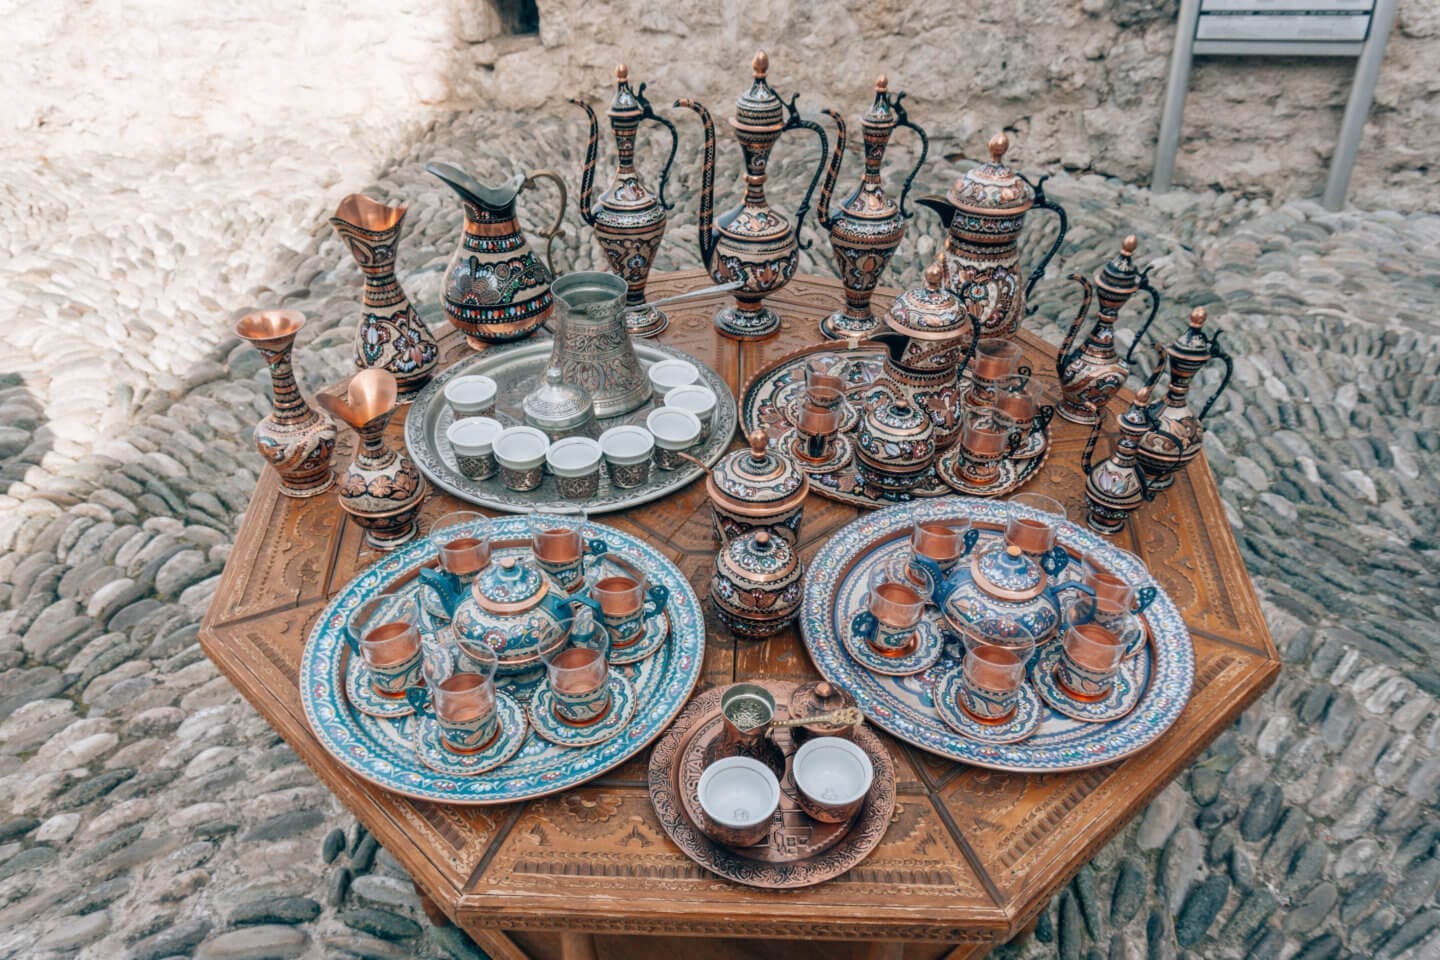 Turkish Tea Sets in Carsija Market - Mostar